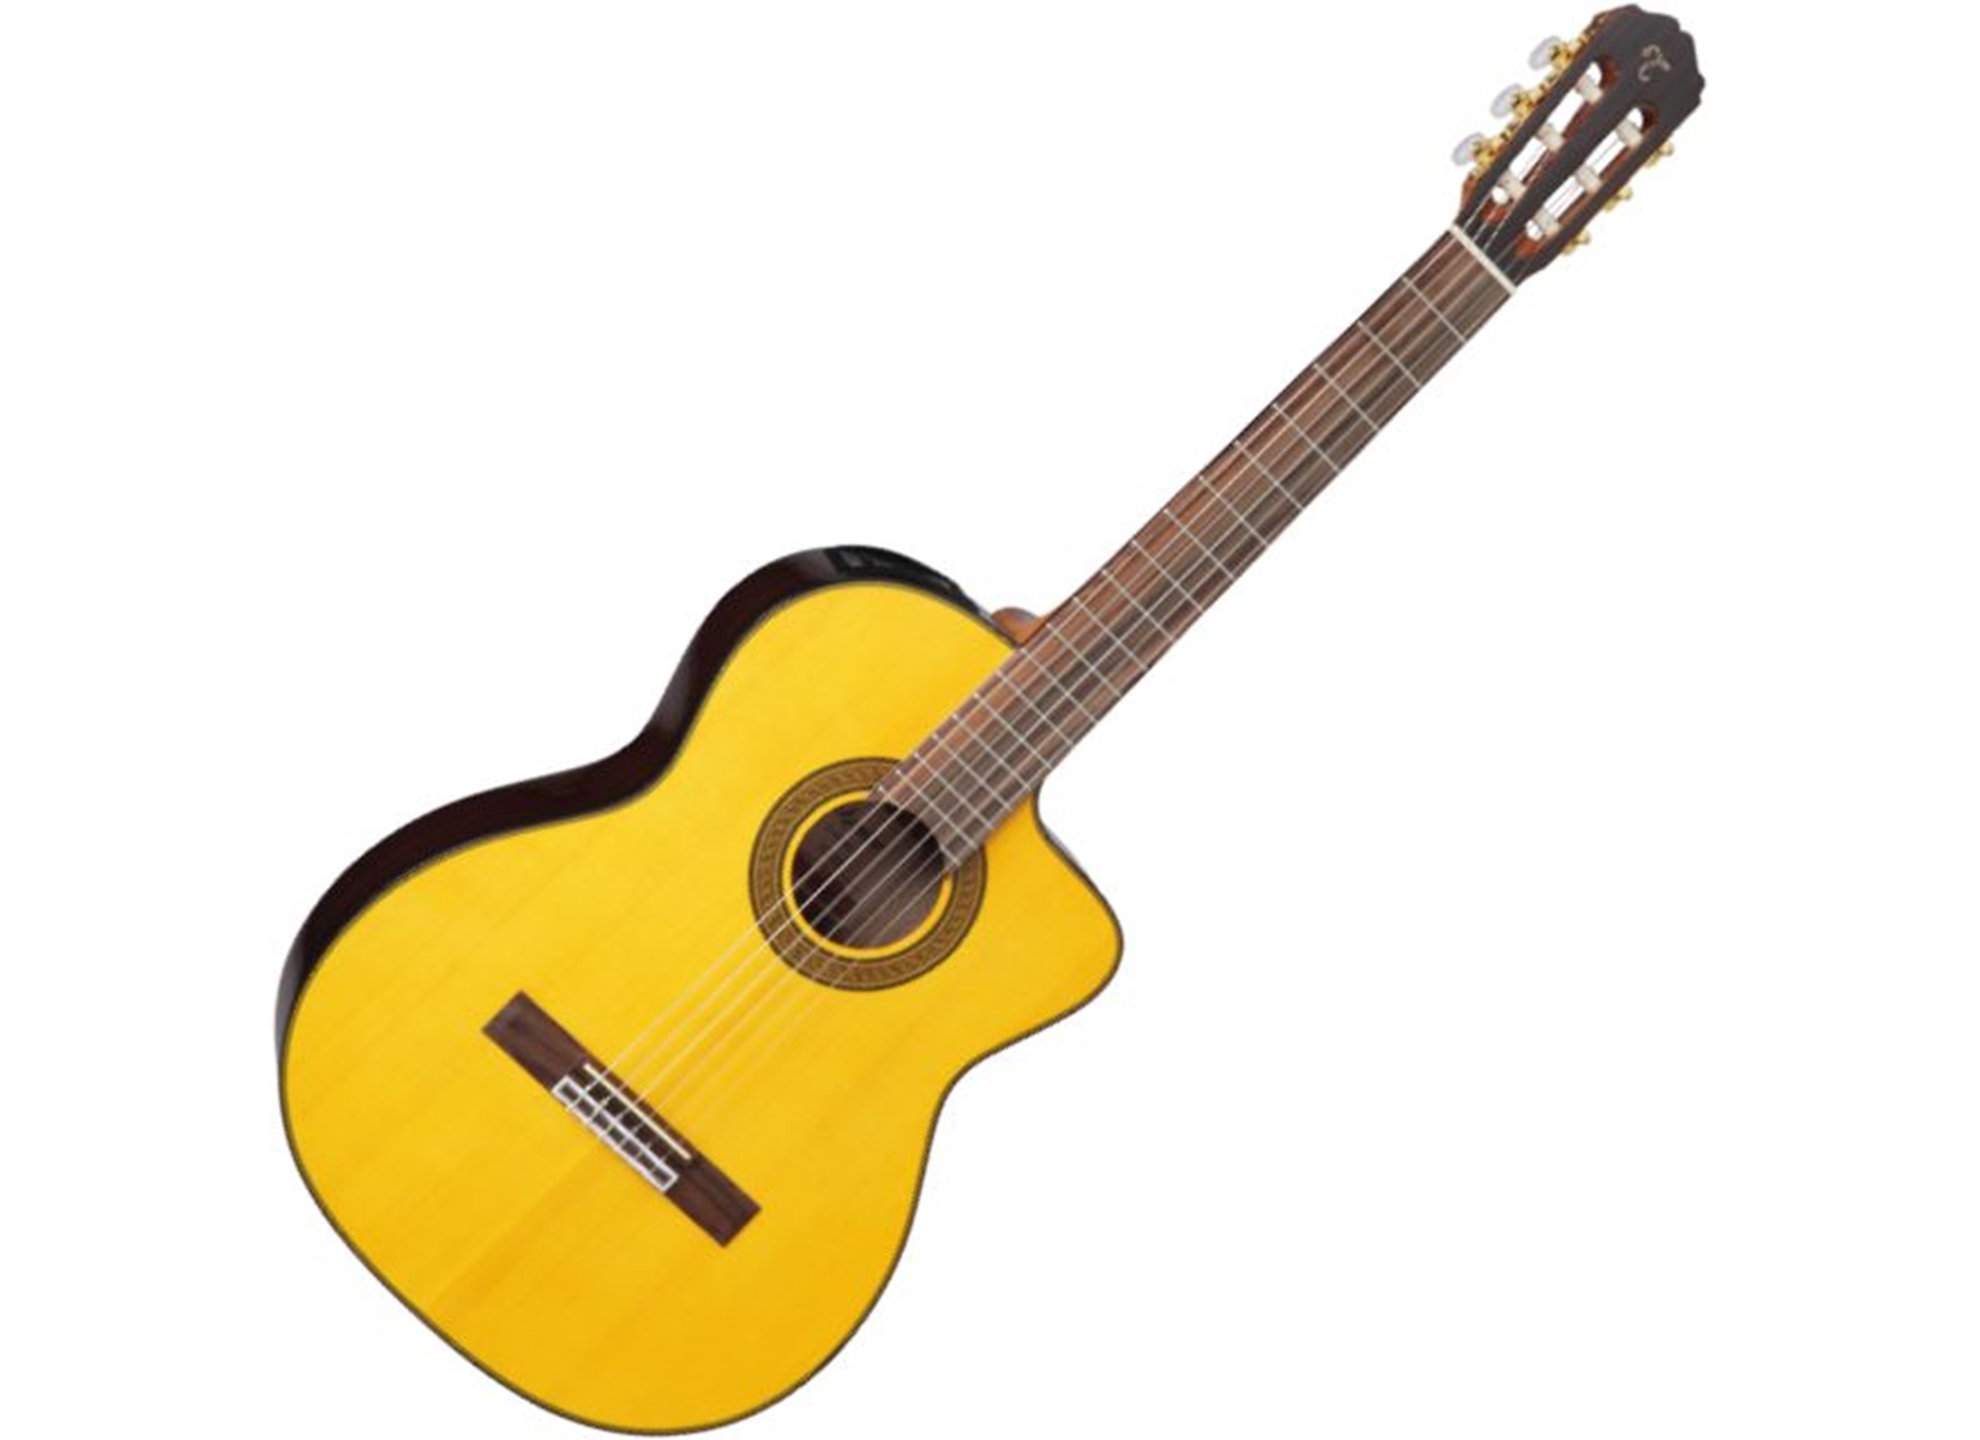 Ямаха сх. Alhambra 803-2 Classical student 2c. Alhambra 1c испанская классическая гитара. Гитара Admira Juanita. Гитара Alhambra 5p.